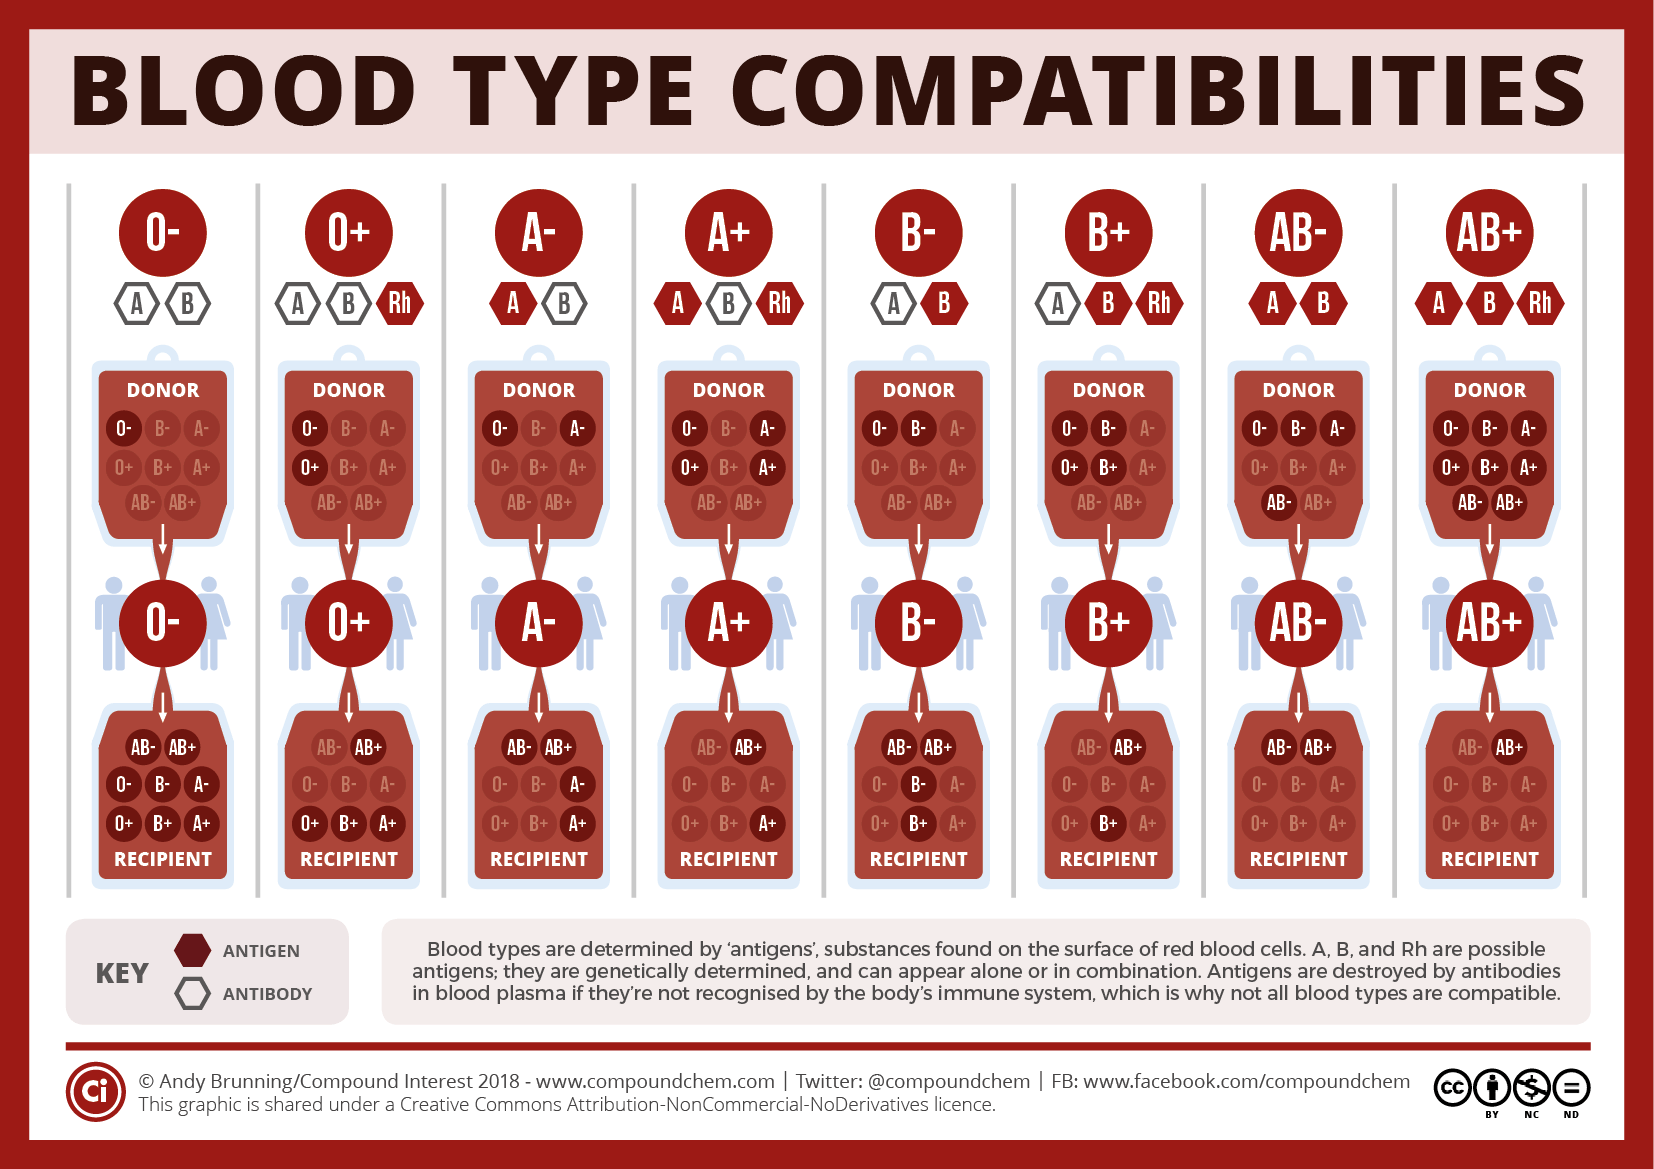 Blood types